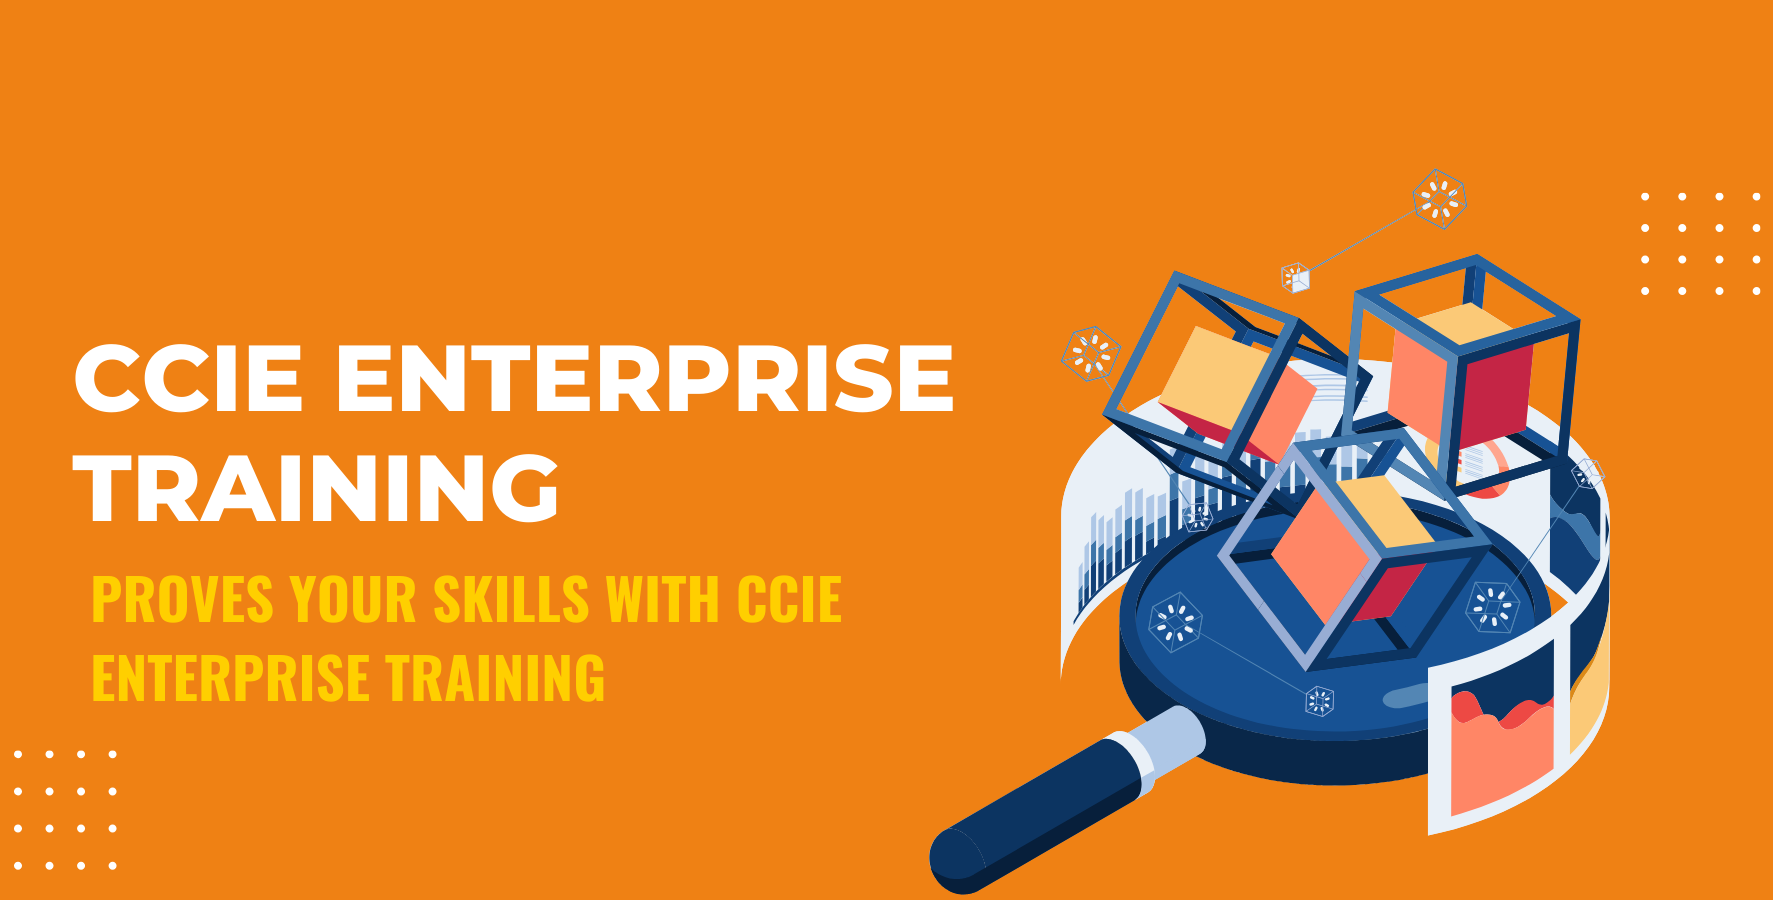 CCIE Enterprise training